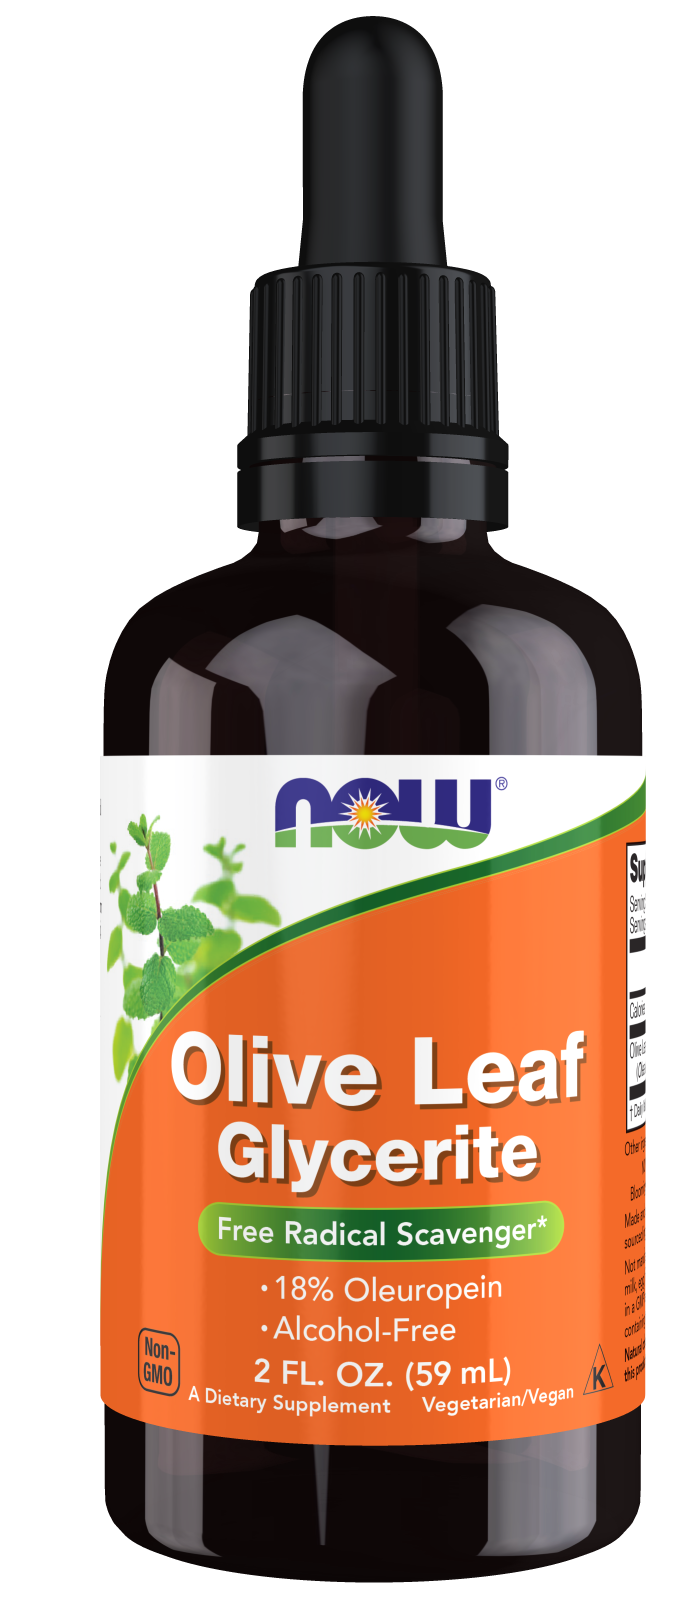 Olive Leaf Glycerite 18% - 2 fl. oz. Bottle Front